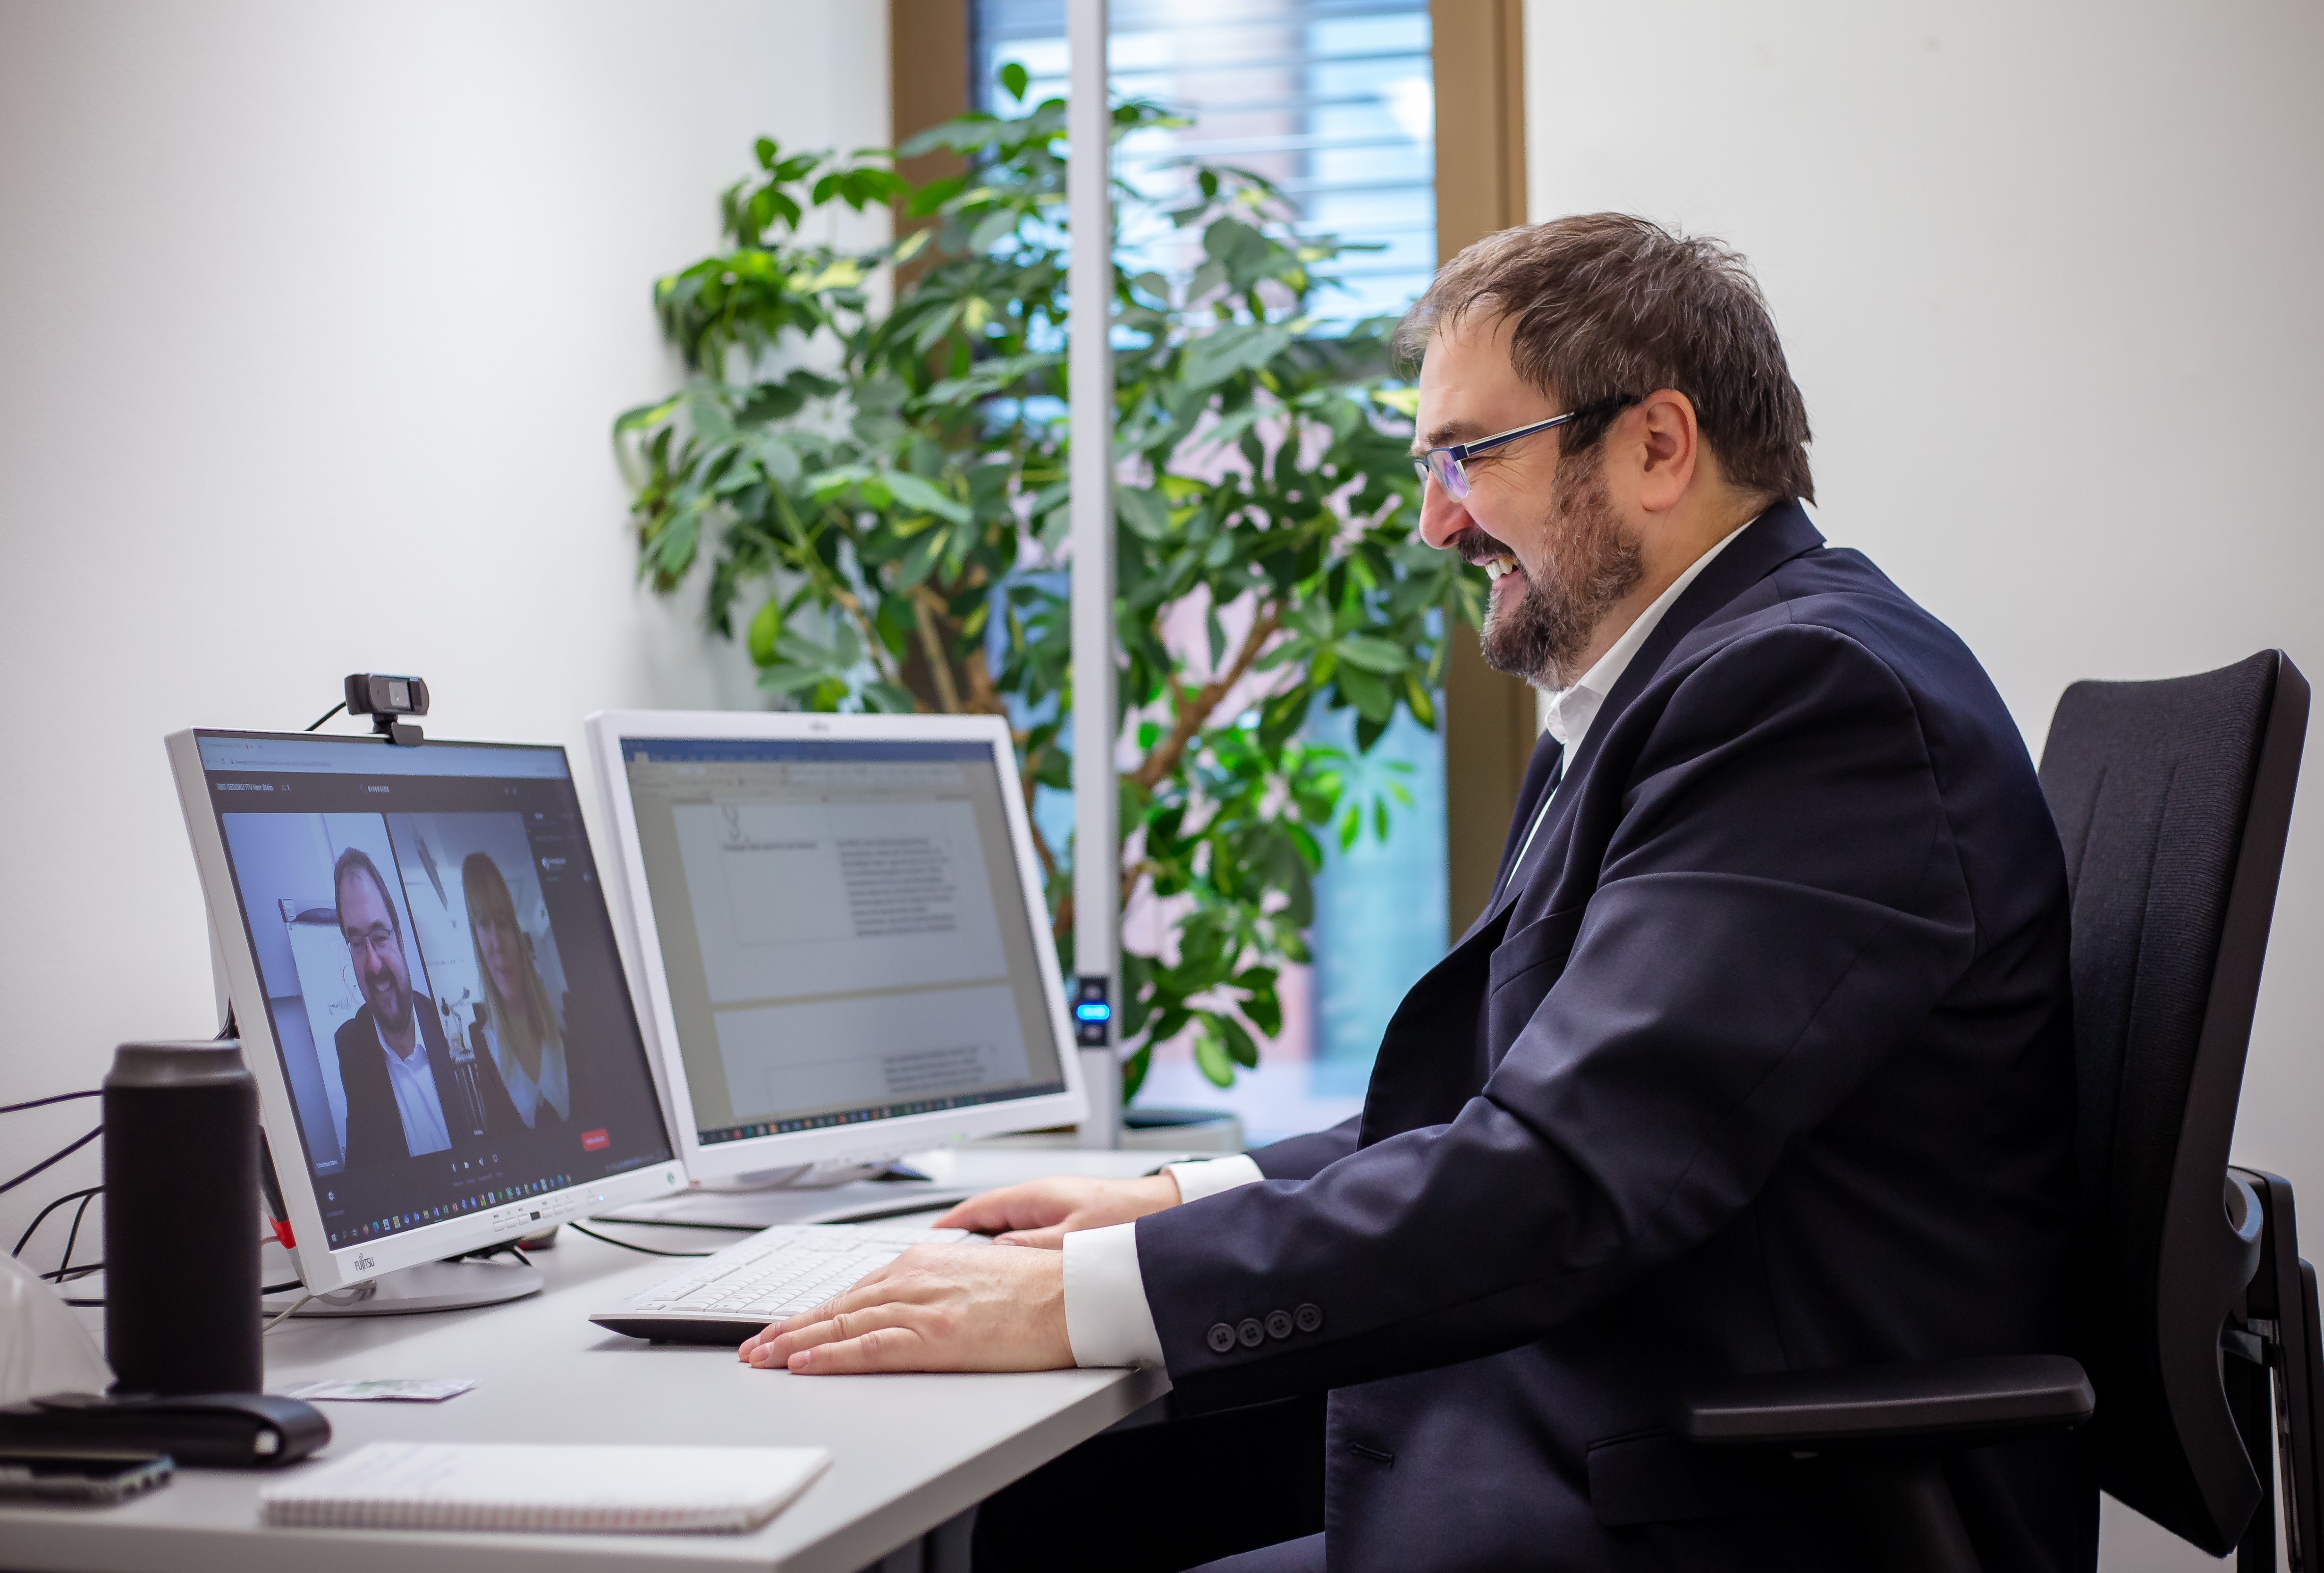 Ein Mann mit Brille, Bart und einem schwarzen Jacket sitzt an einem Schreibtisch. Man sieht eine Tastatur und einen Bildschirm. Der Mann ist in einem online-Meeting.